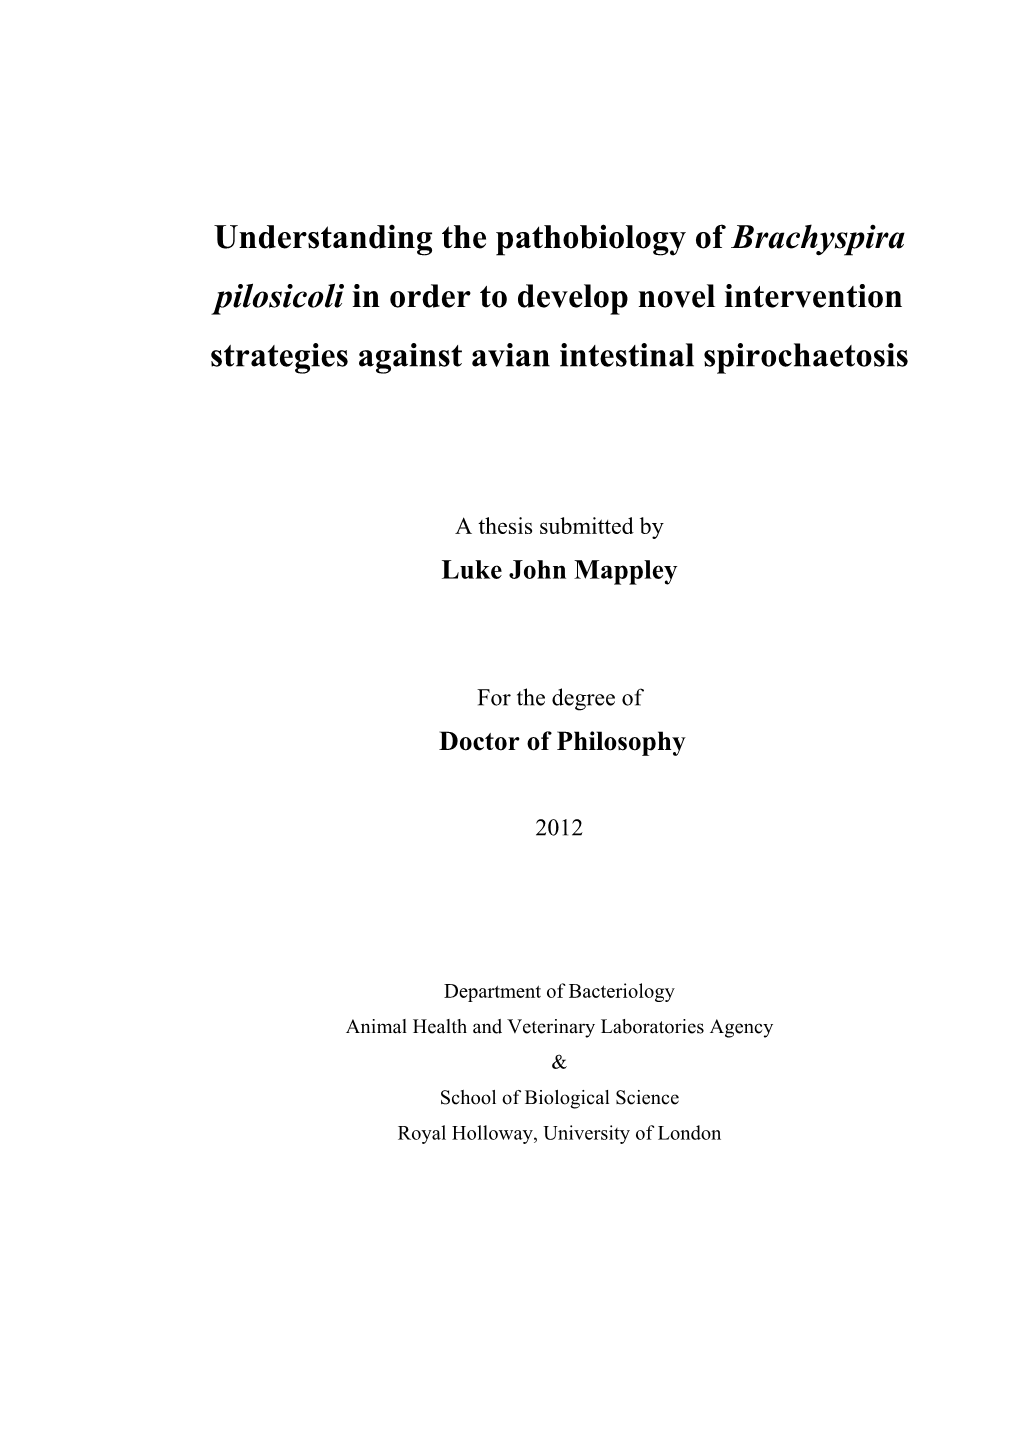 Towards Understanding the Pathobiology of Brachyspira